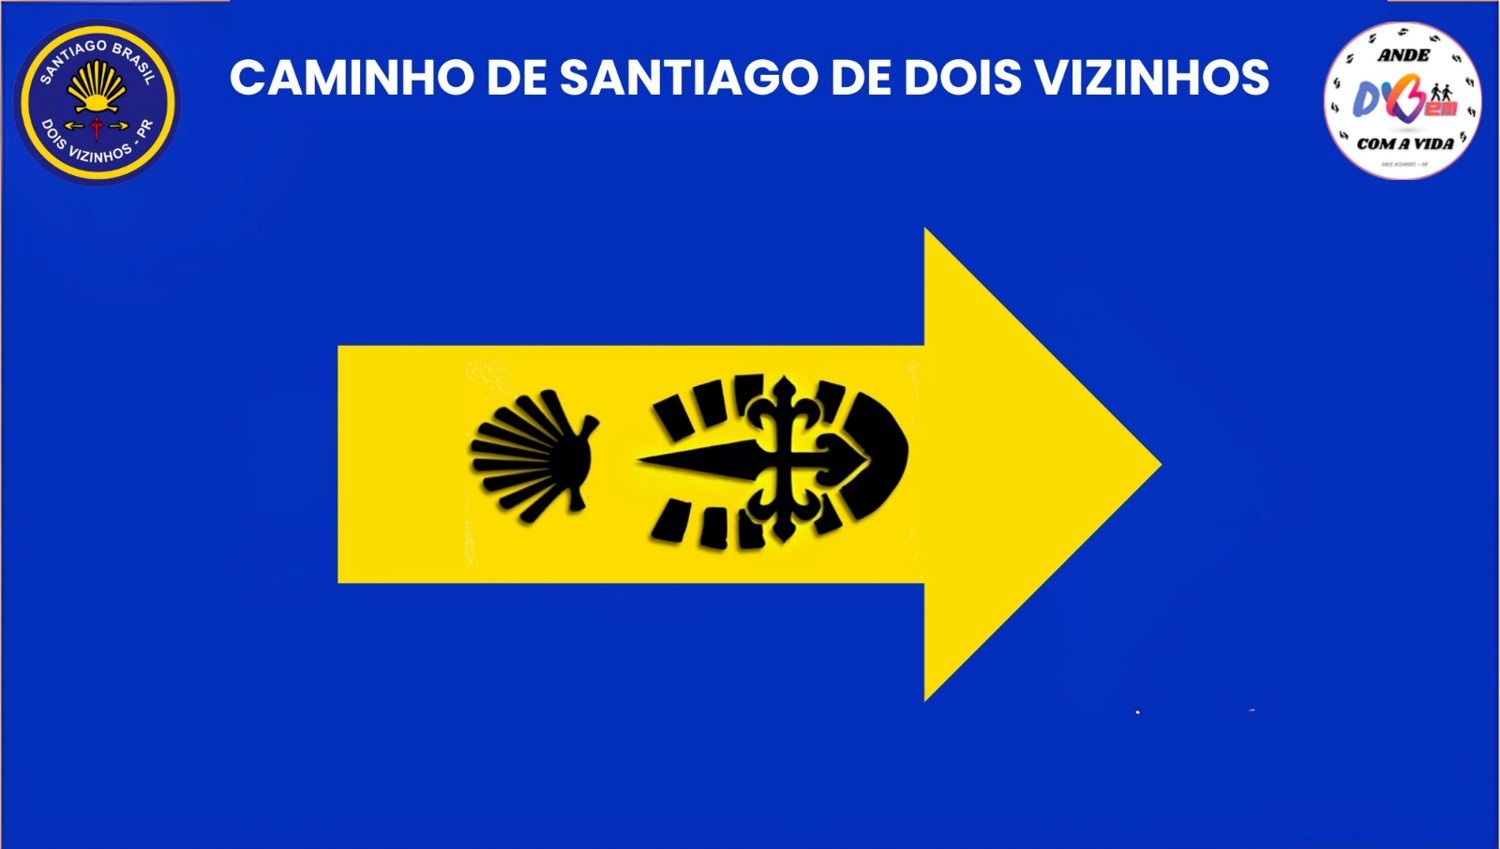 INCIO DA SINALIZAO DO CAMINHO DE SANTIAGO DE DOIS VIZINHOS